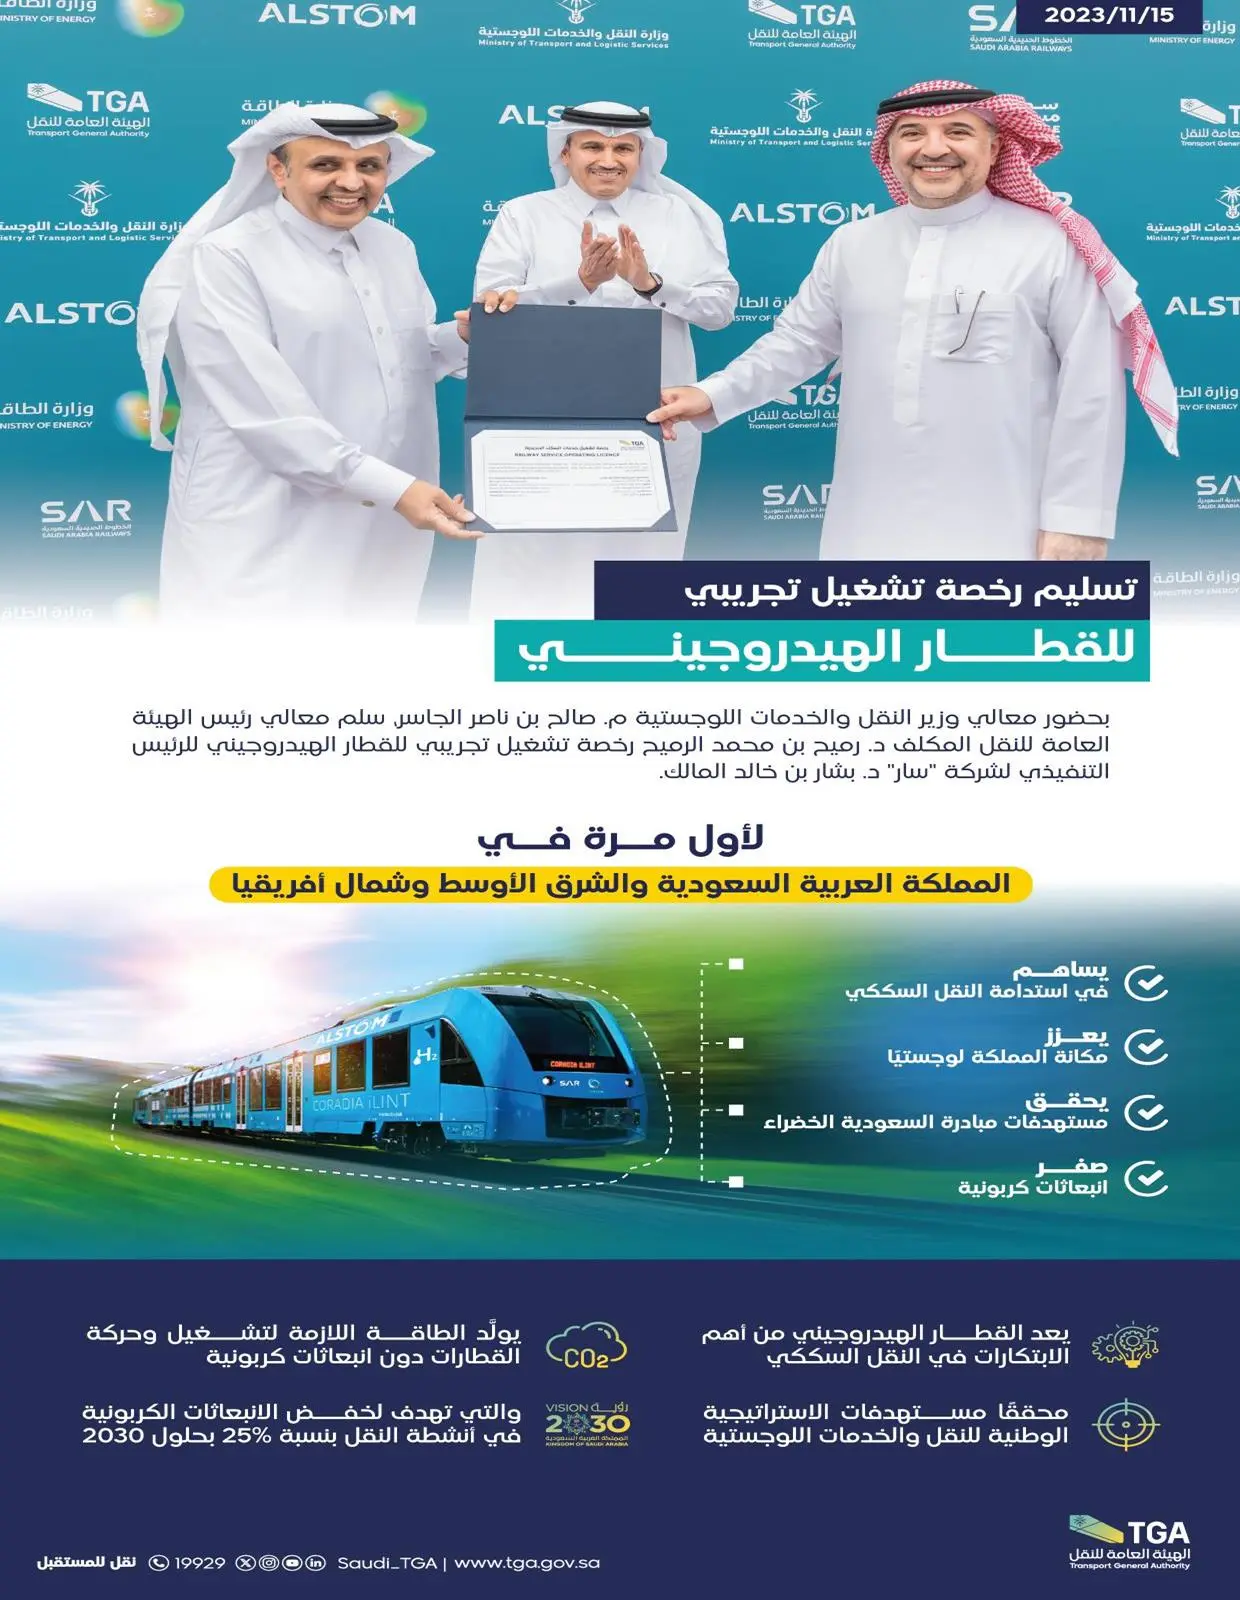 "هيئة النقل" تسلِّم رخصة تشغيل تجريبي للقطار الهيدروجيني في الشرق الأوسط وشمال أفريقيا